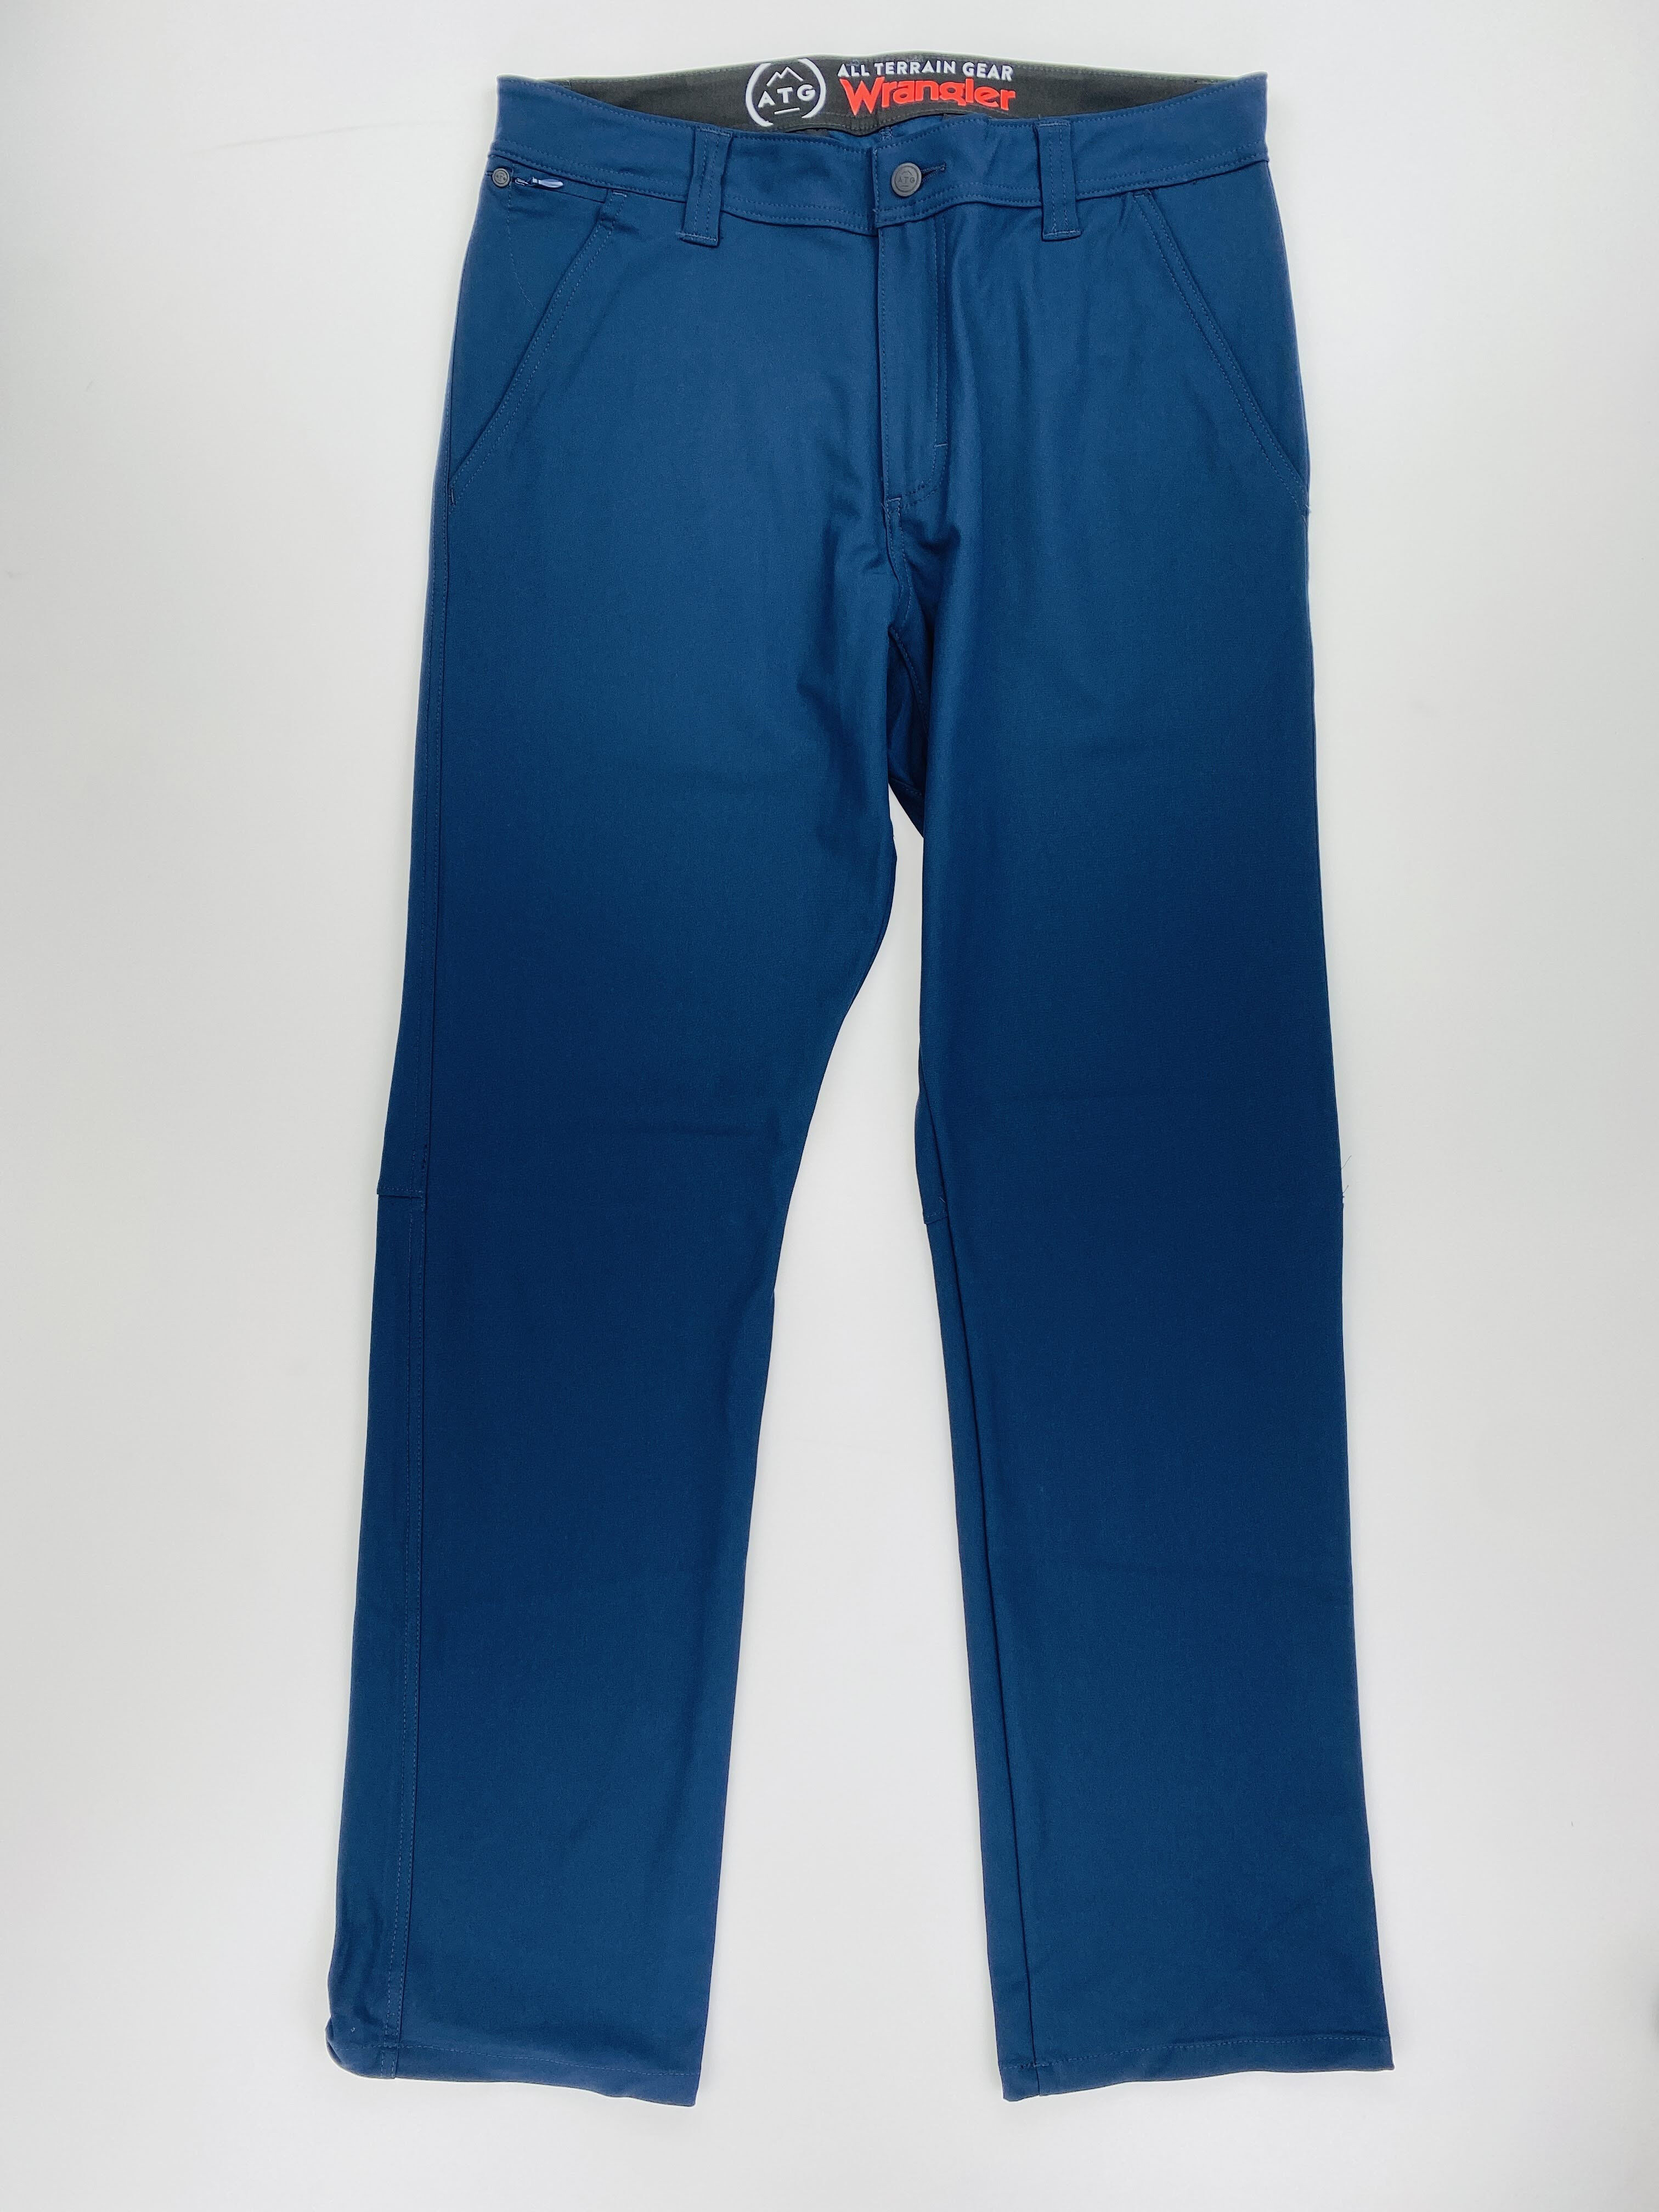 Wrangler Fwds Chino Pant - Second Hand Dámské turistické kalhoty - Modrý - US 28 | Hardloop